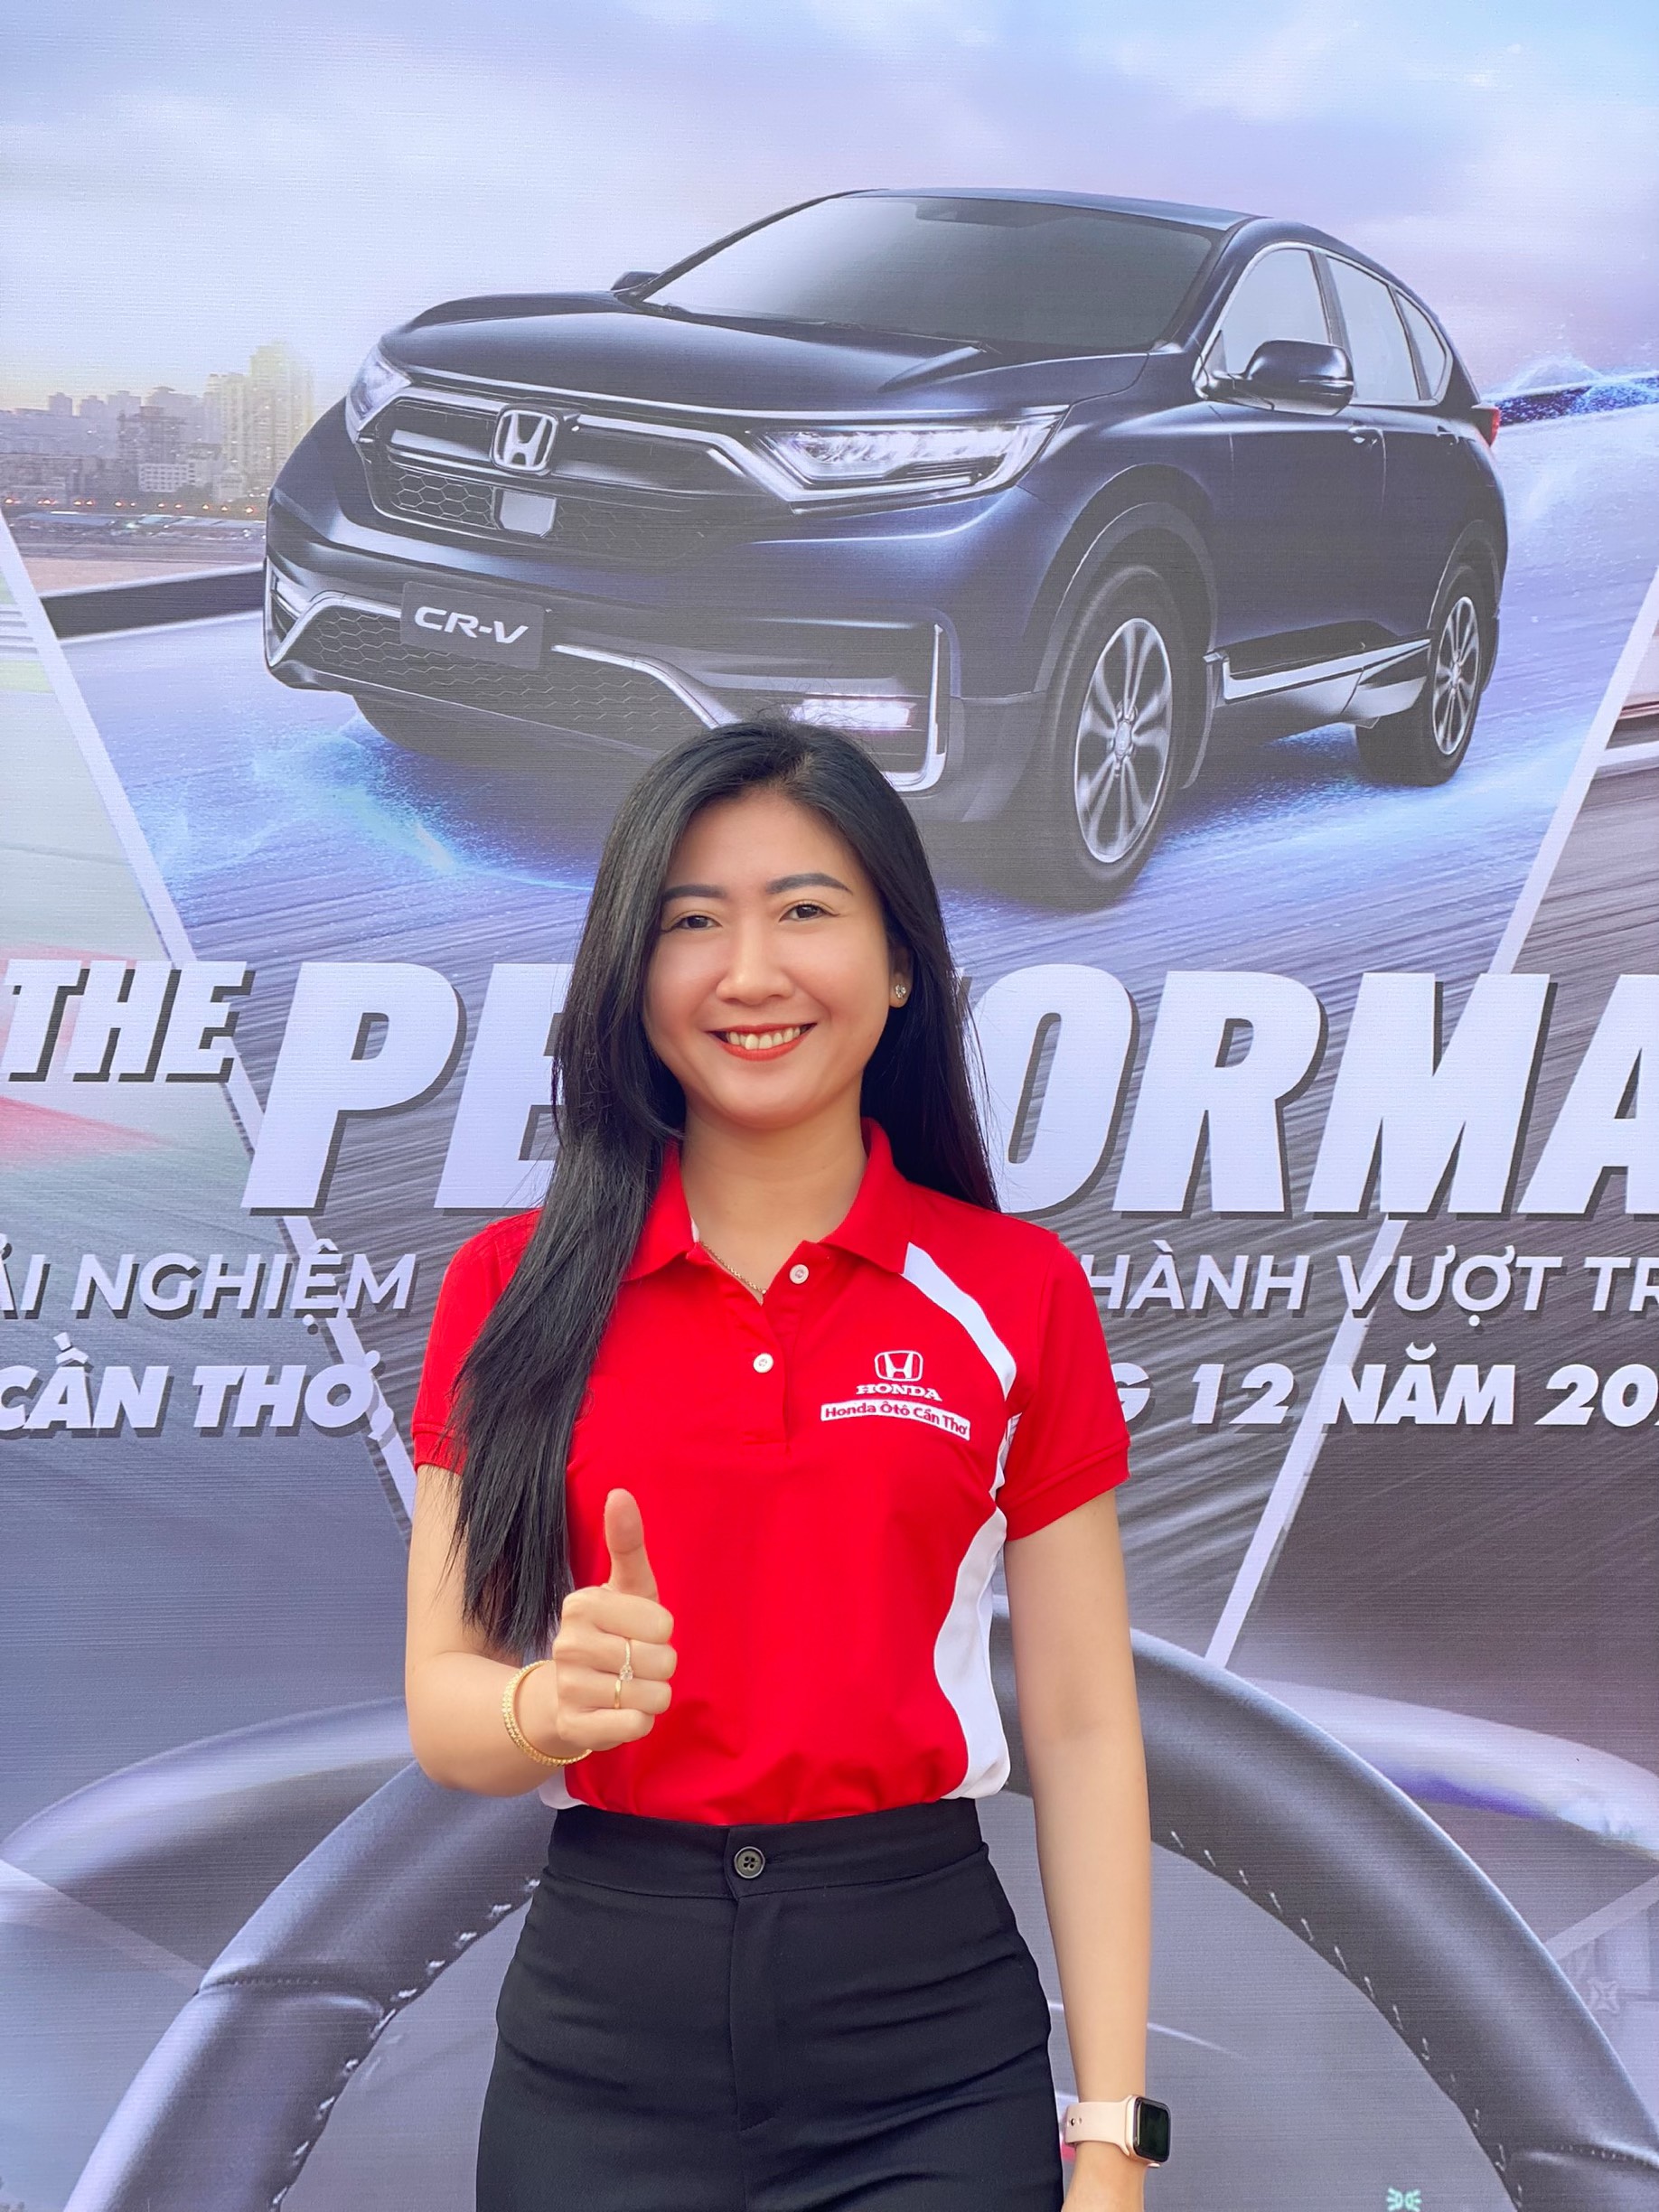 CTKM SINH NHẬT VÀNG  NGÀN QUÀ TẶNG  Honda Thanh Vương Phát  Xe máy trả  góp  Honda Bình Dương